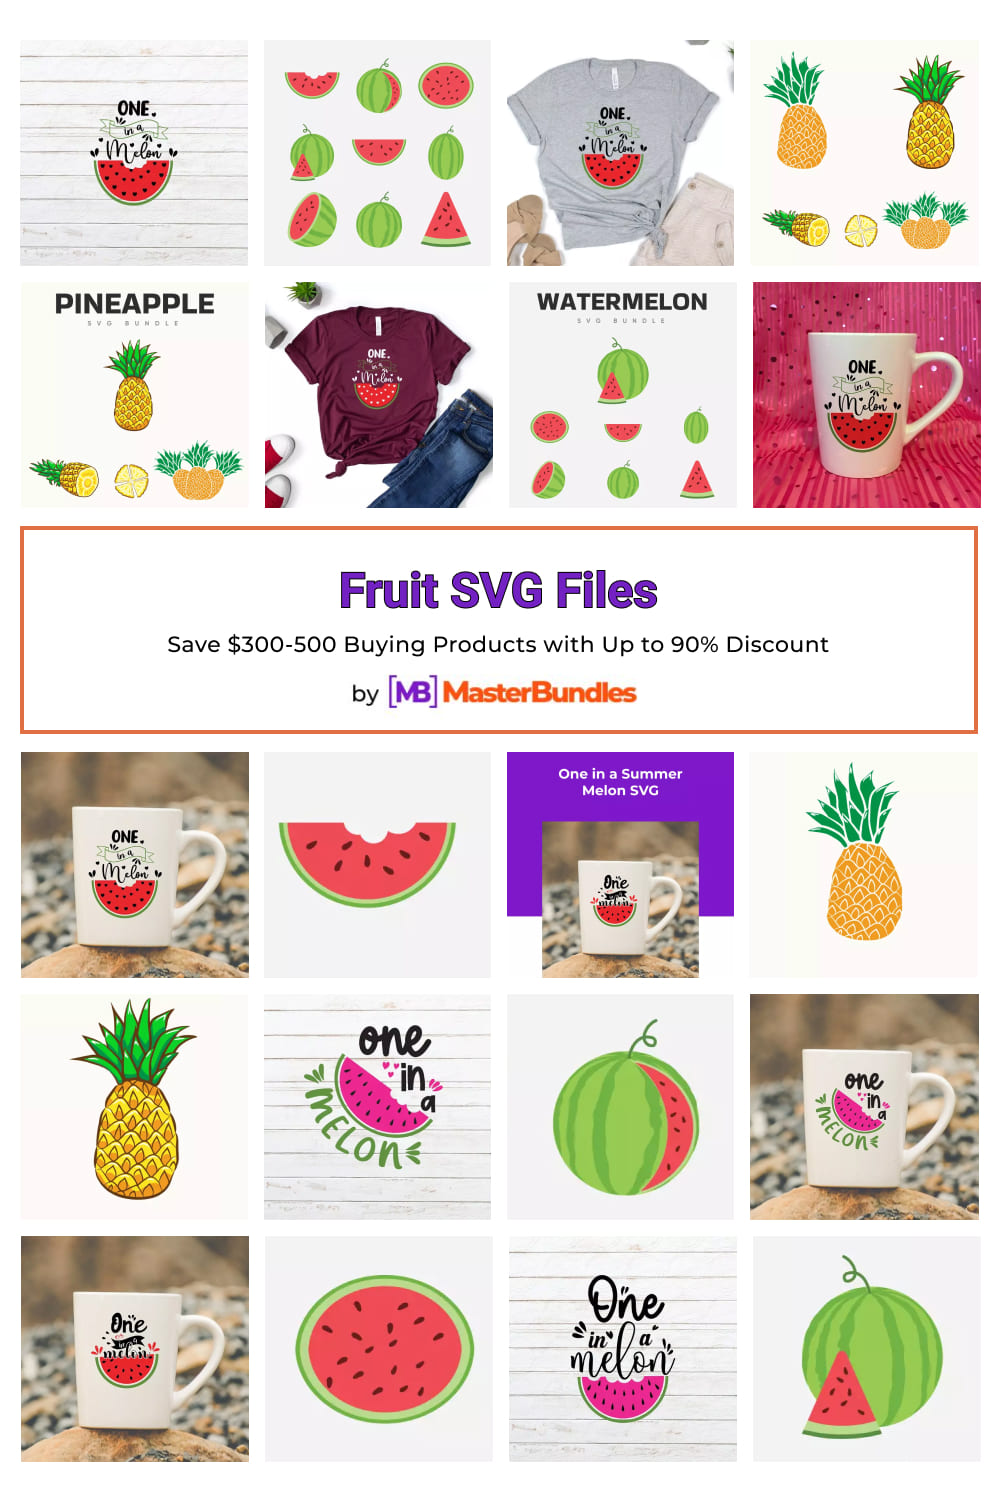 Fruit SVG Files for Pinterest.